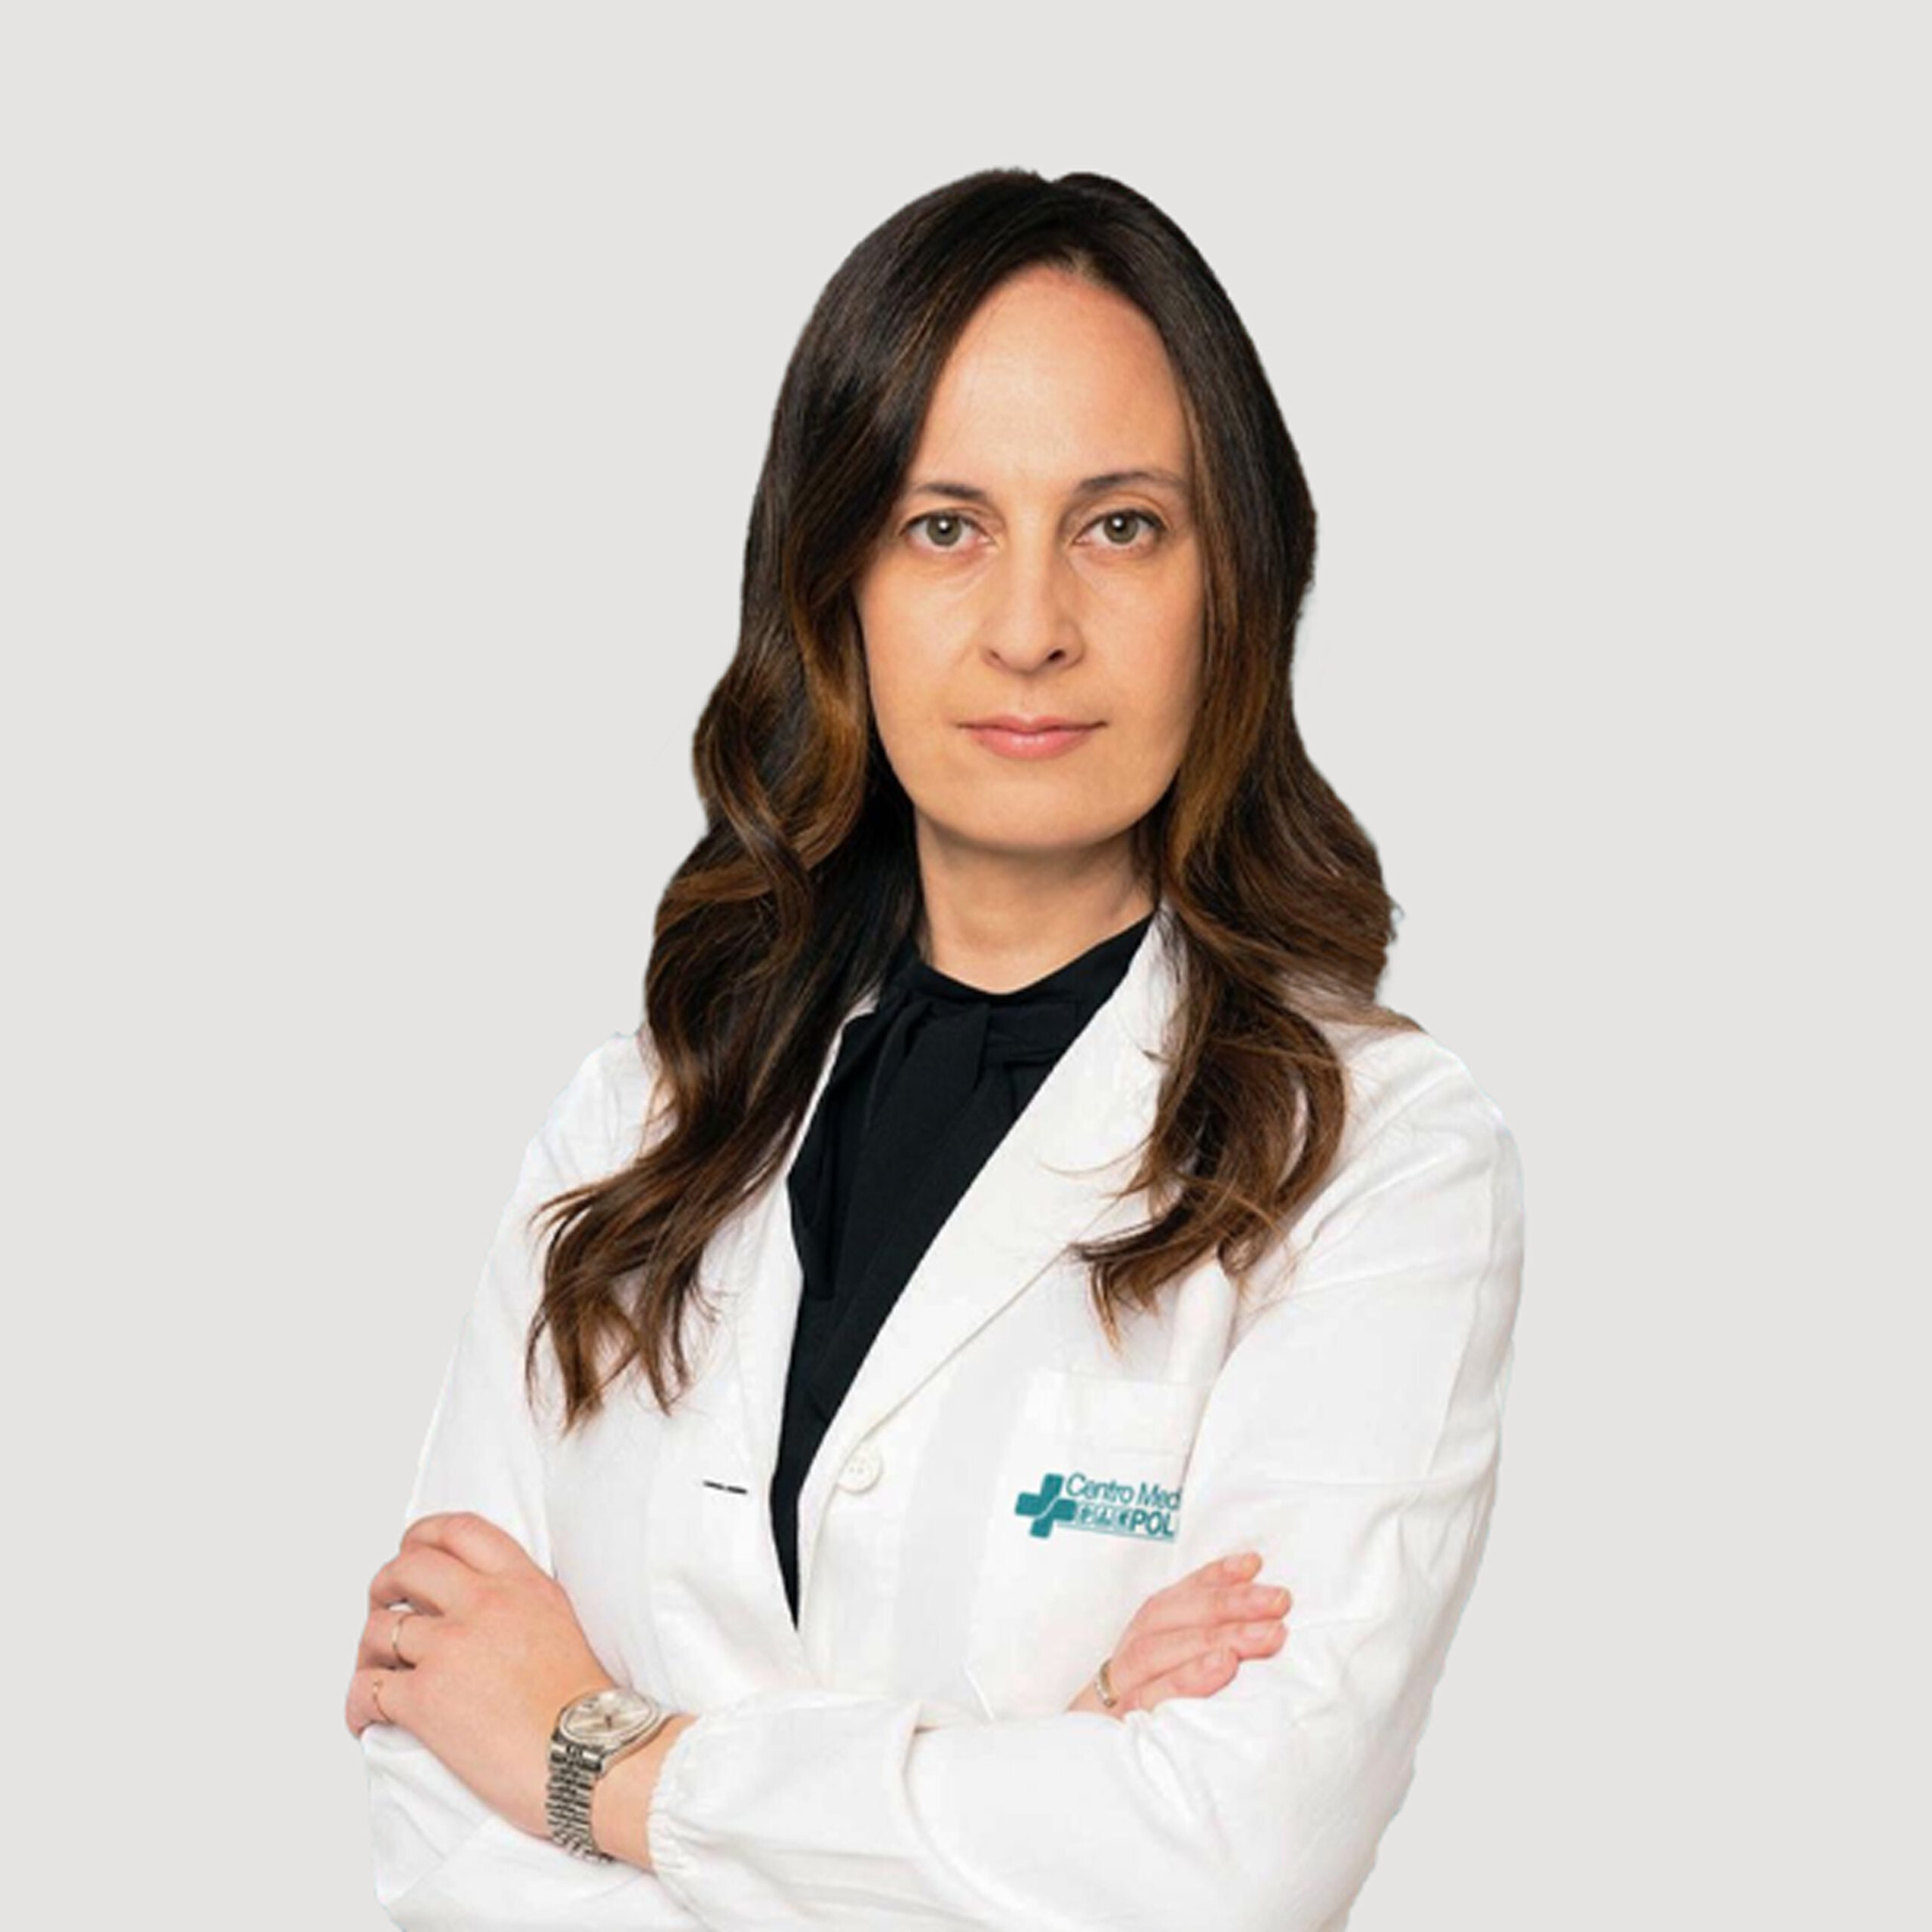 Dottoressa Anna Paola Tassi Fisiatra Centro Medico Polisalute Cologno Monzese (Milano)